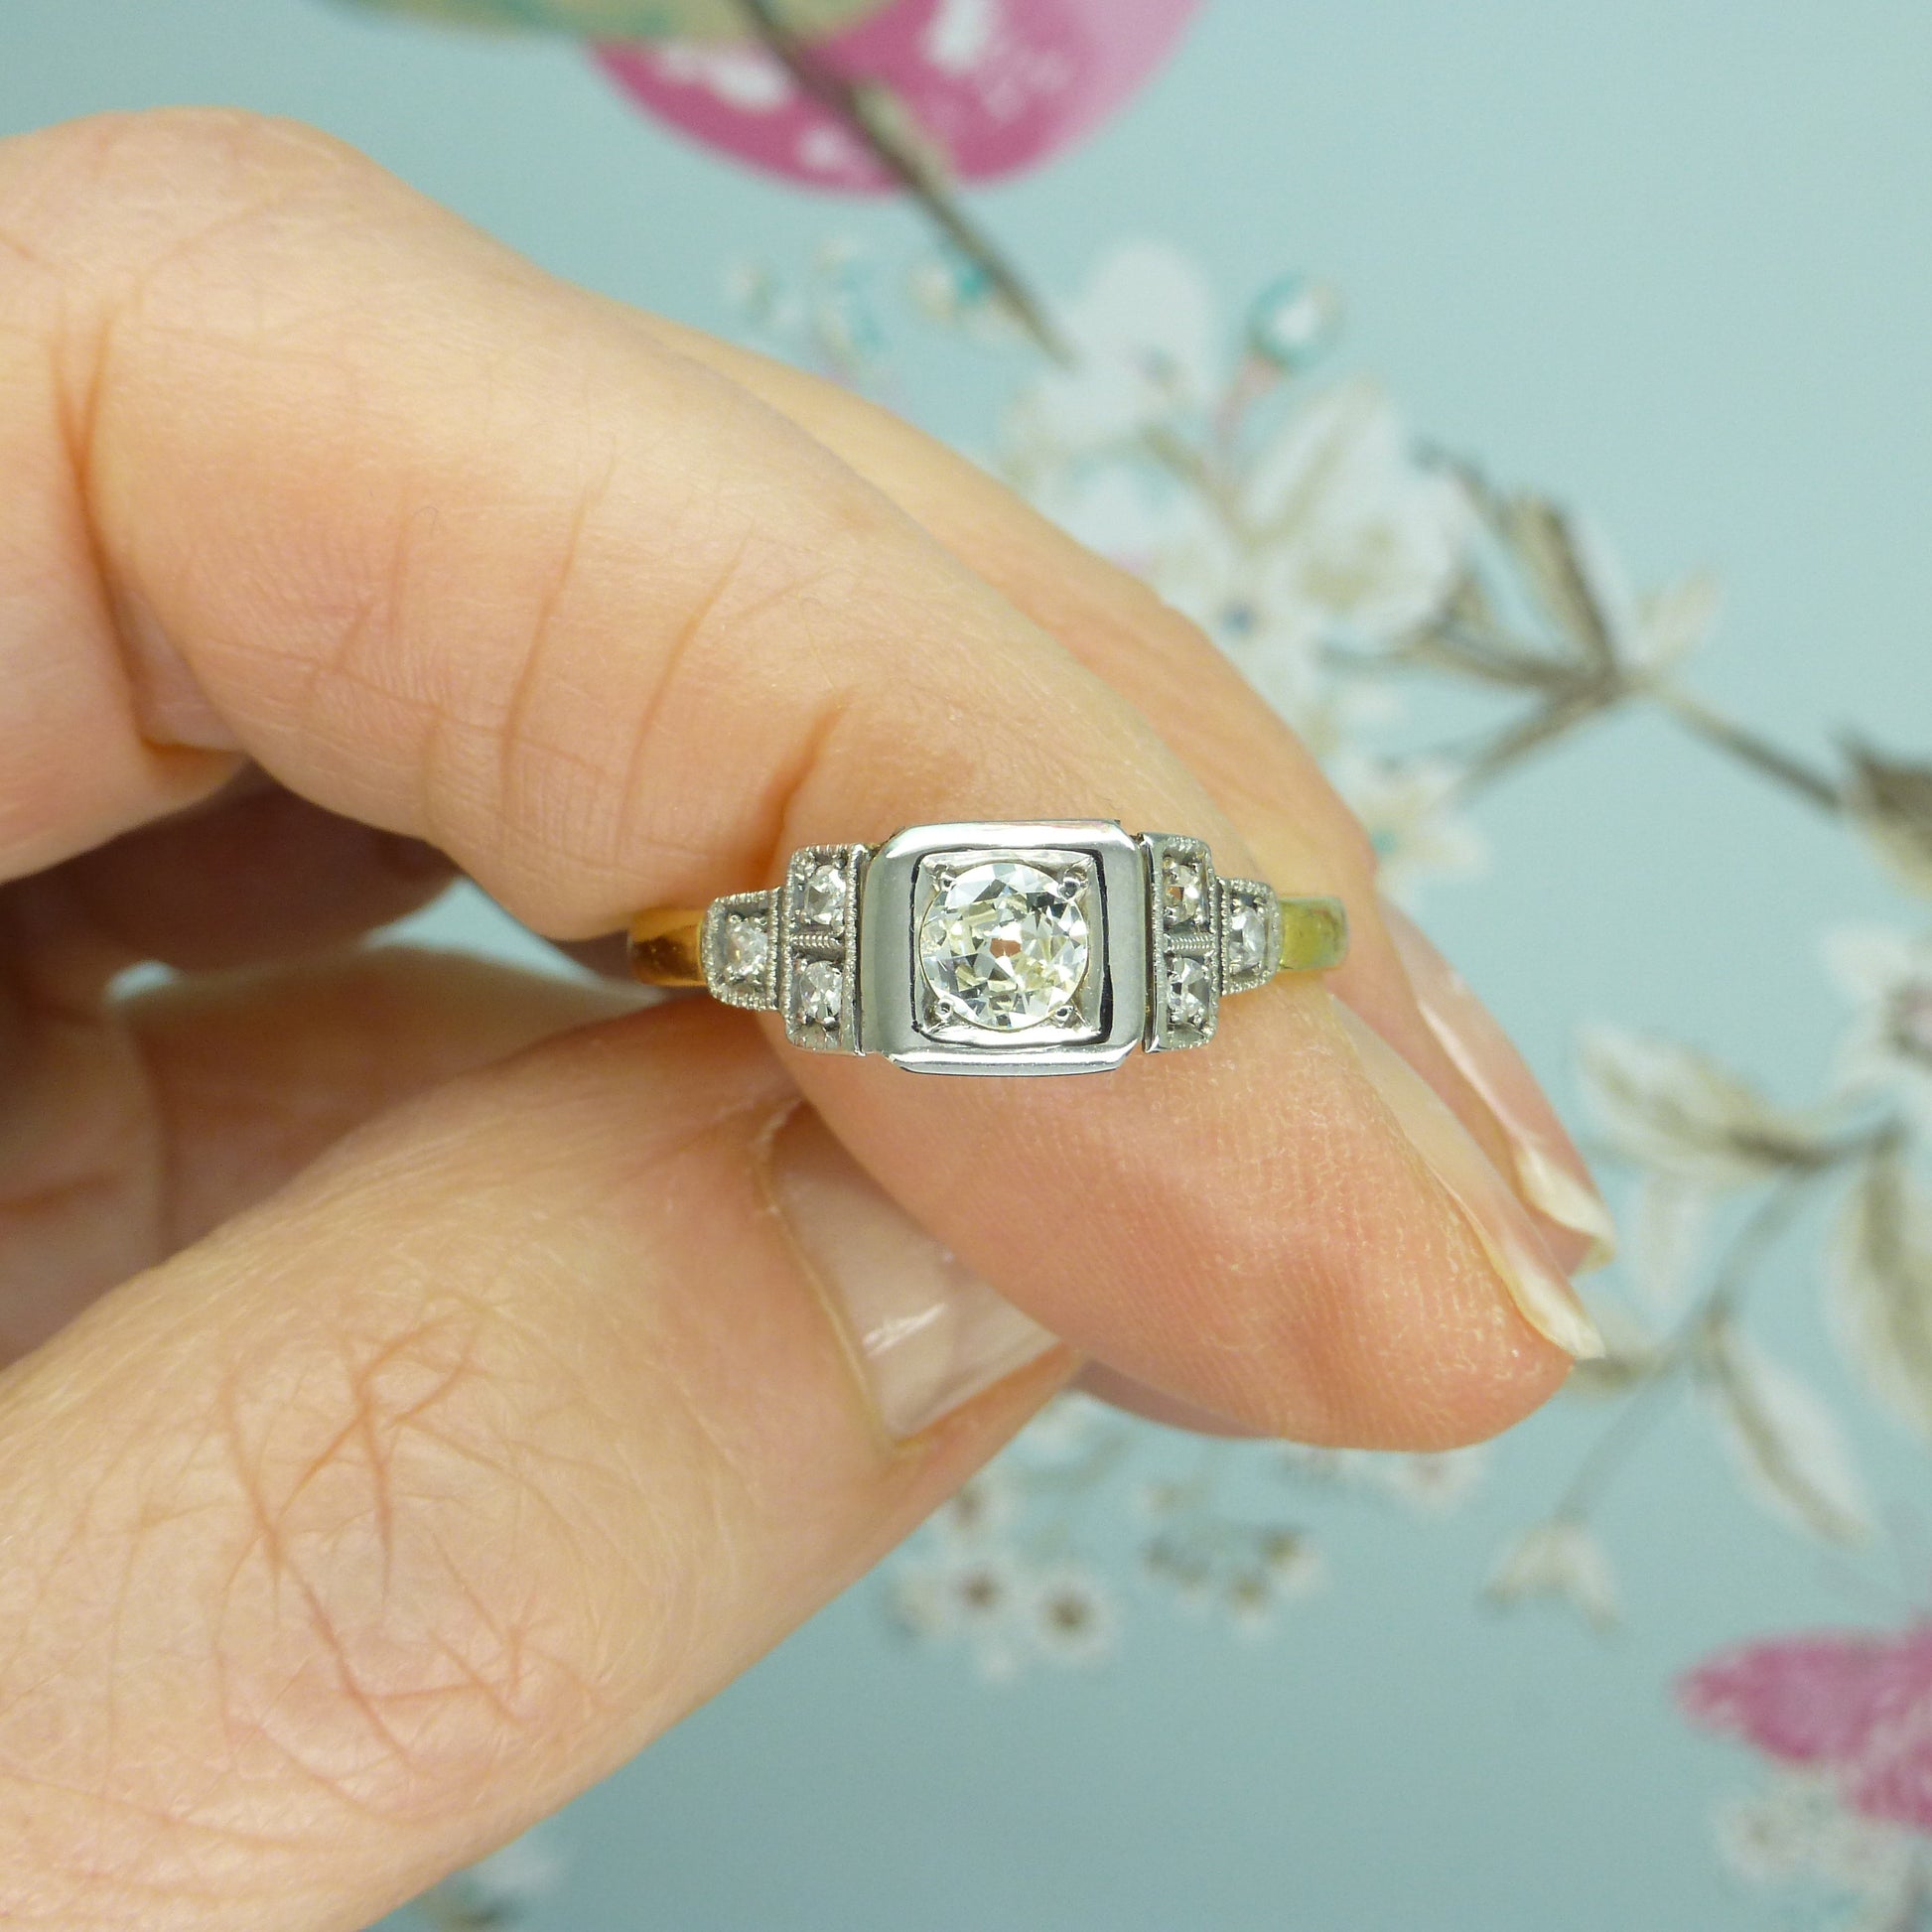 Antique Art Deco 18ct Platinum old cut diamond solitaire engagement ring c1920s